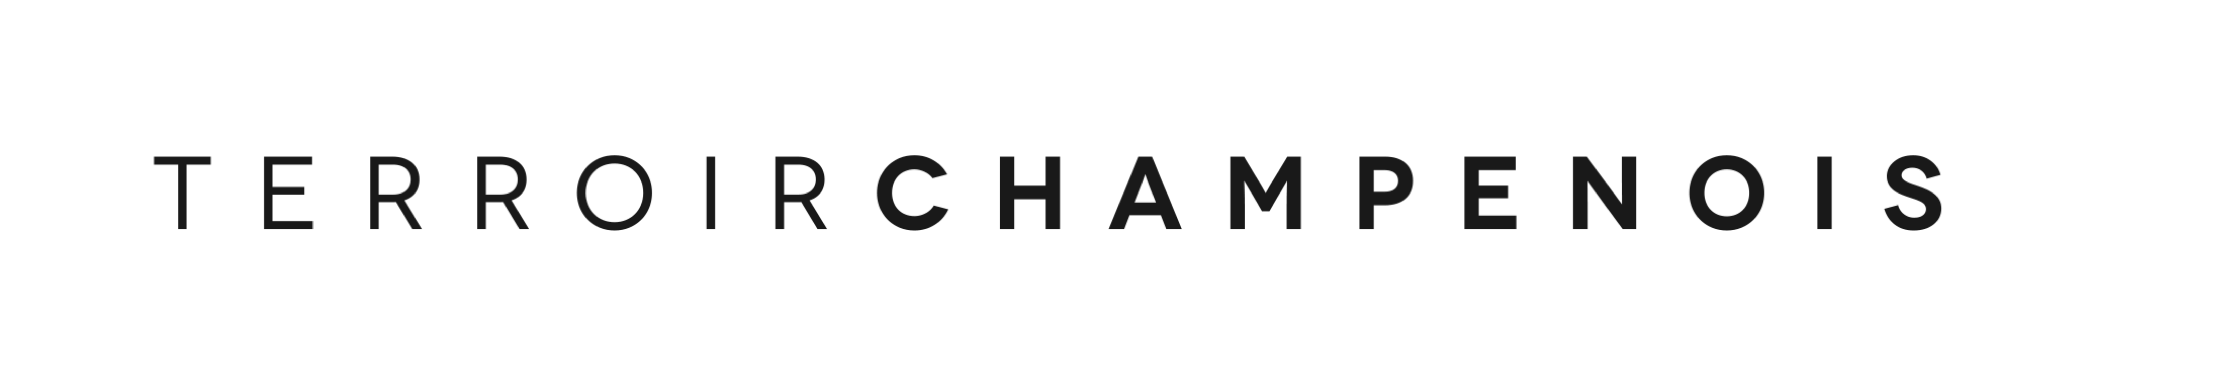 Terroir Champenois Mobile Retina Logo